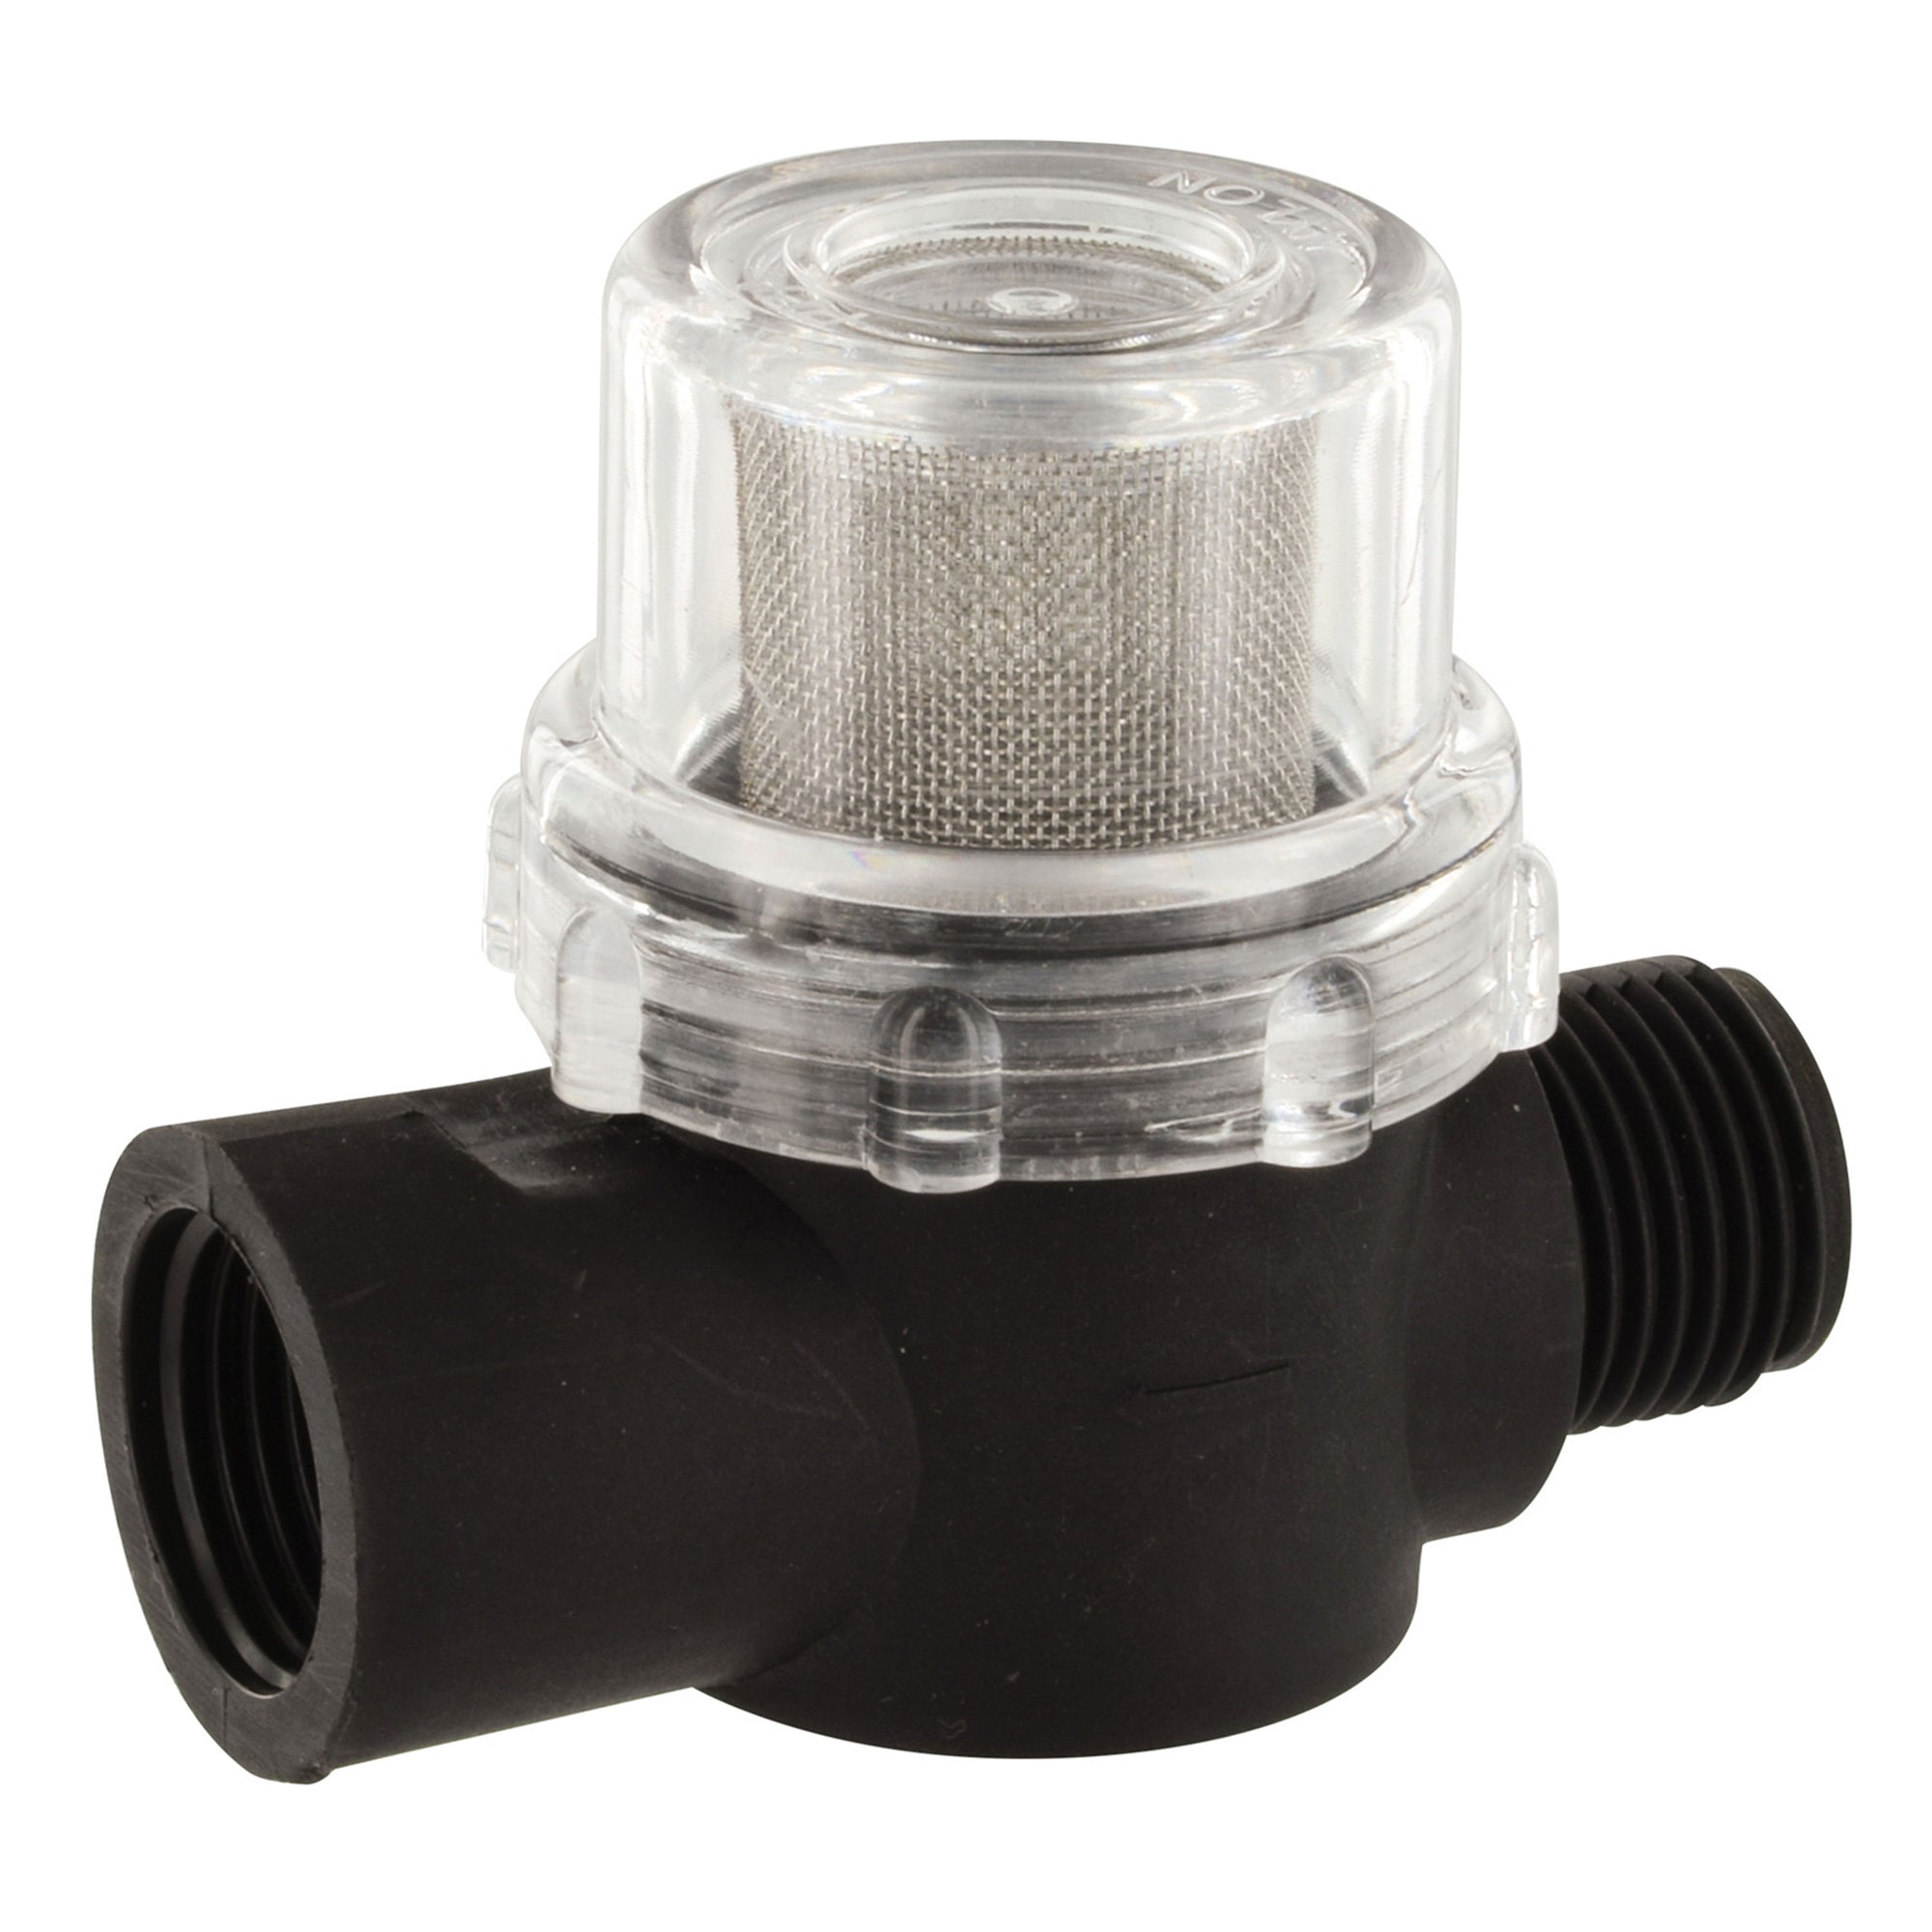 Valterra P25206VP Inline Filter for HydroMax Freshwater Pump